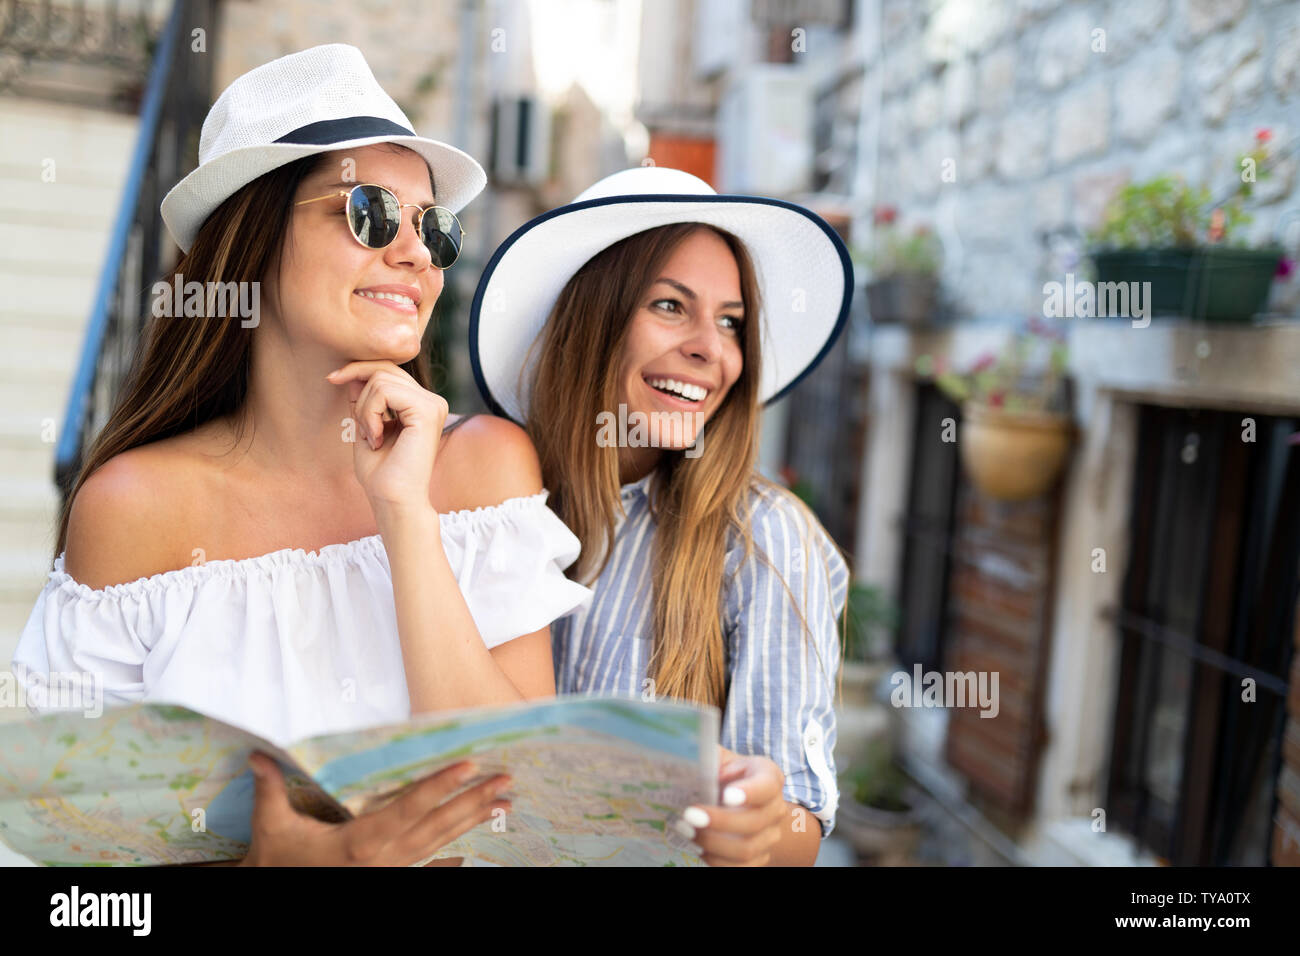 Sonriendo Group de amigos con mapa. Turismo, viajes, ocio, vacaciones y amistad concepto Foto de stock